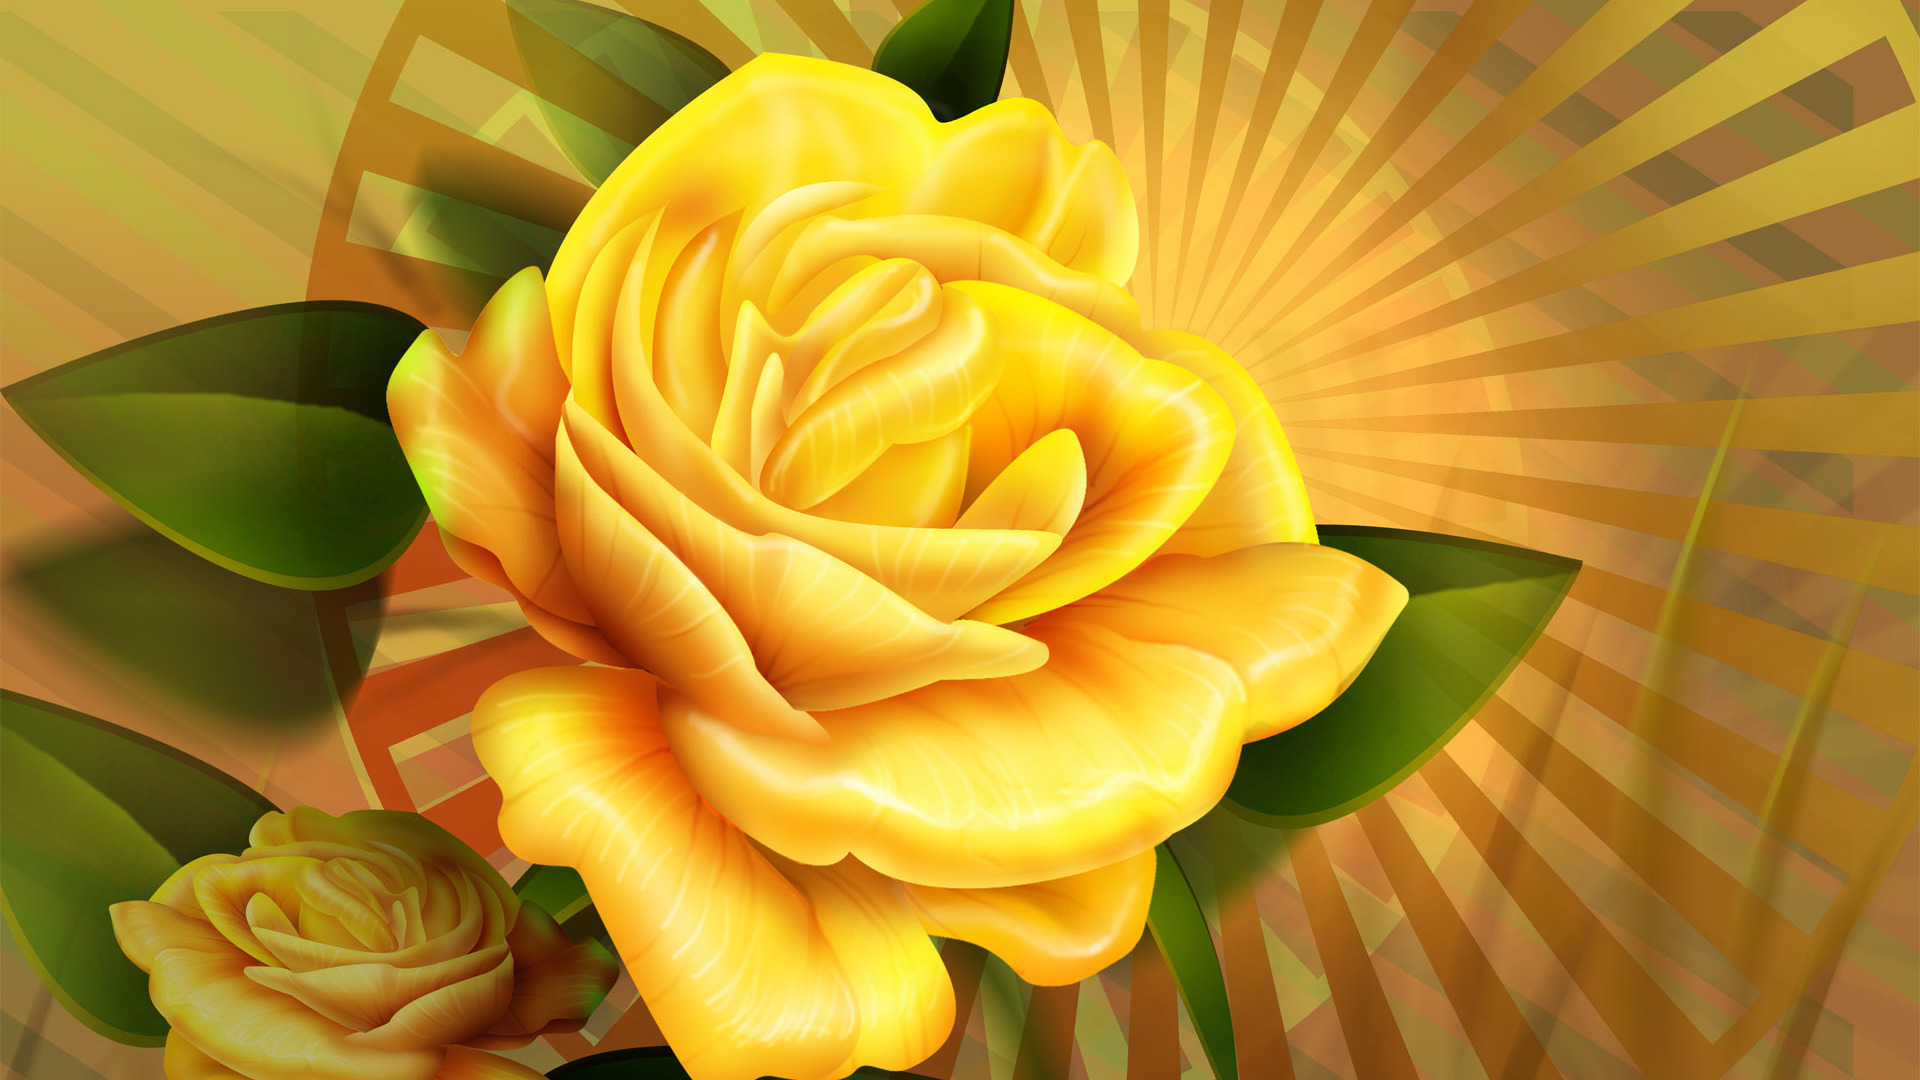 Download Yellow roses wallpaper